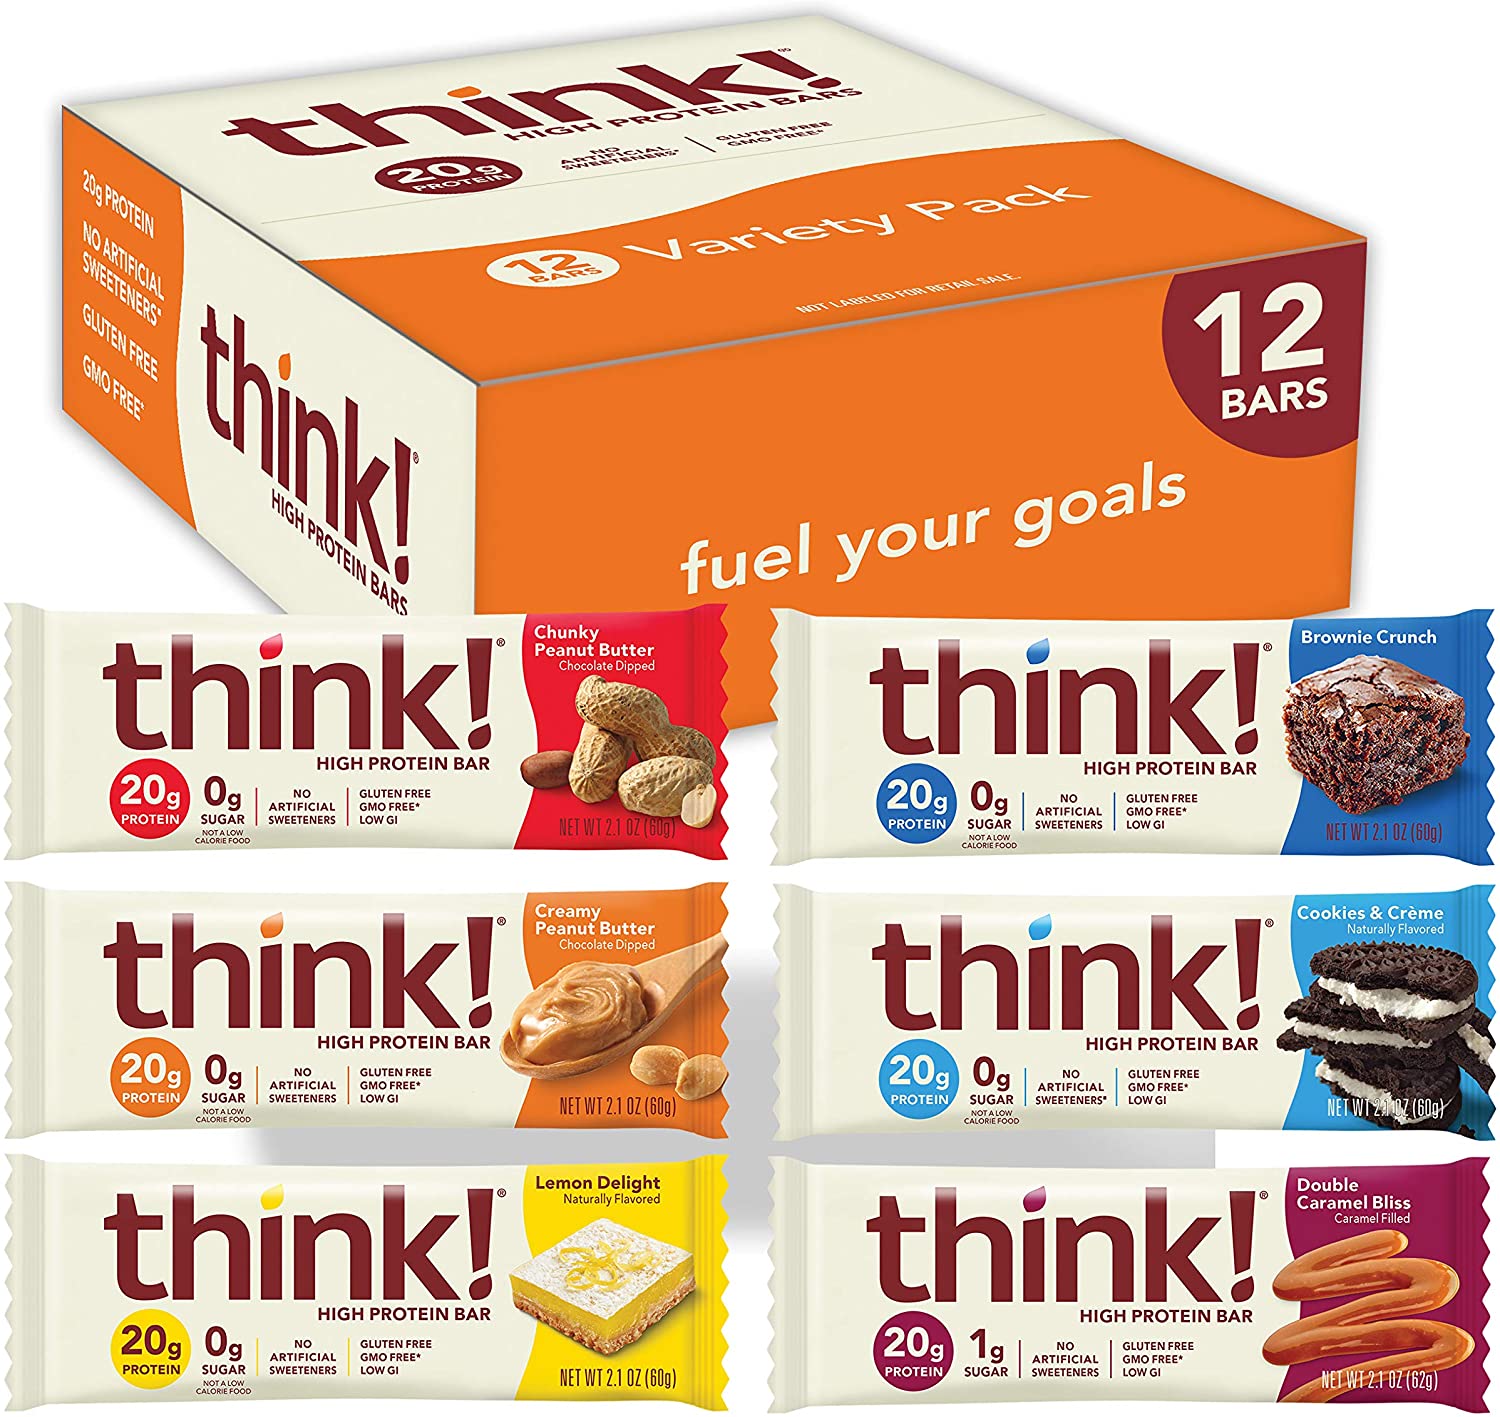 Think !, High Protein Bars, Brownie Crunch, 10 Bars, 2.1 oz (60 g) Each